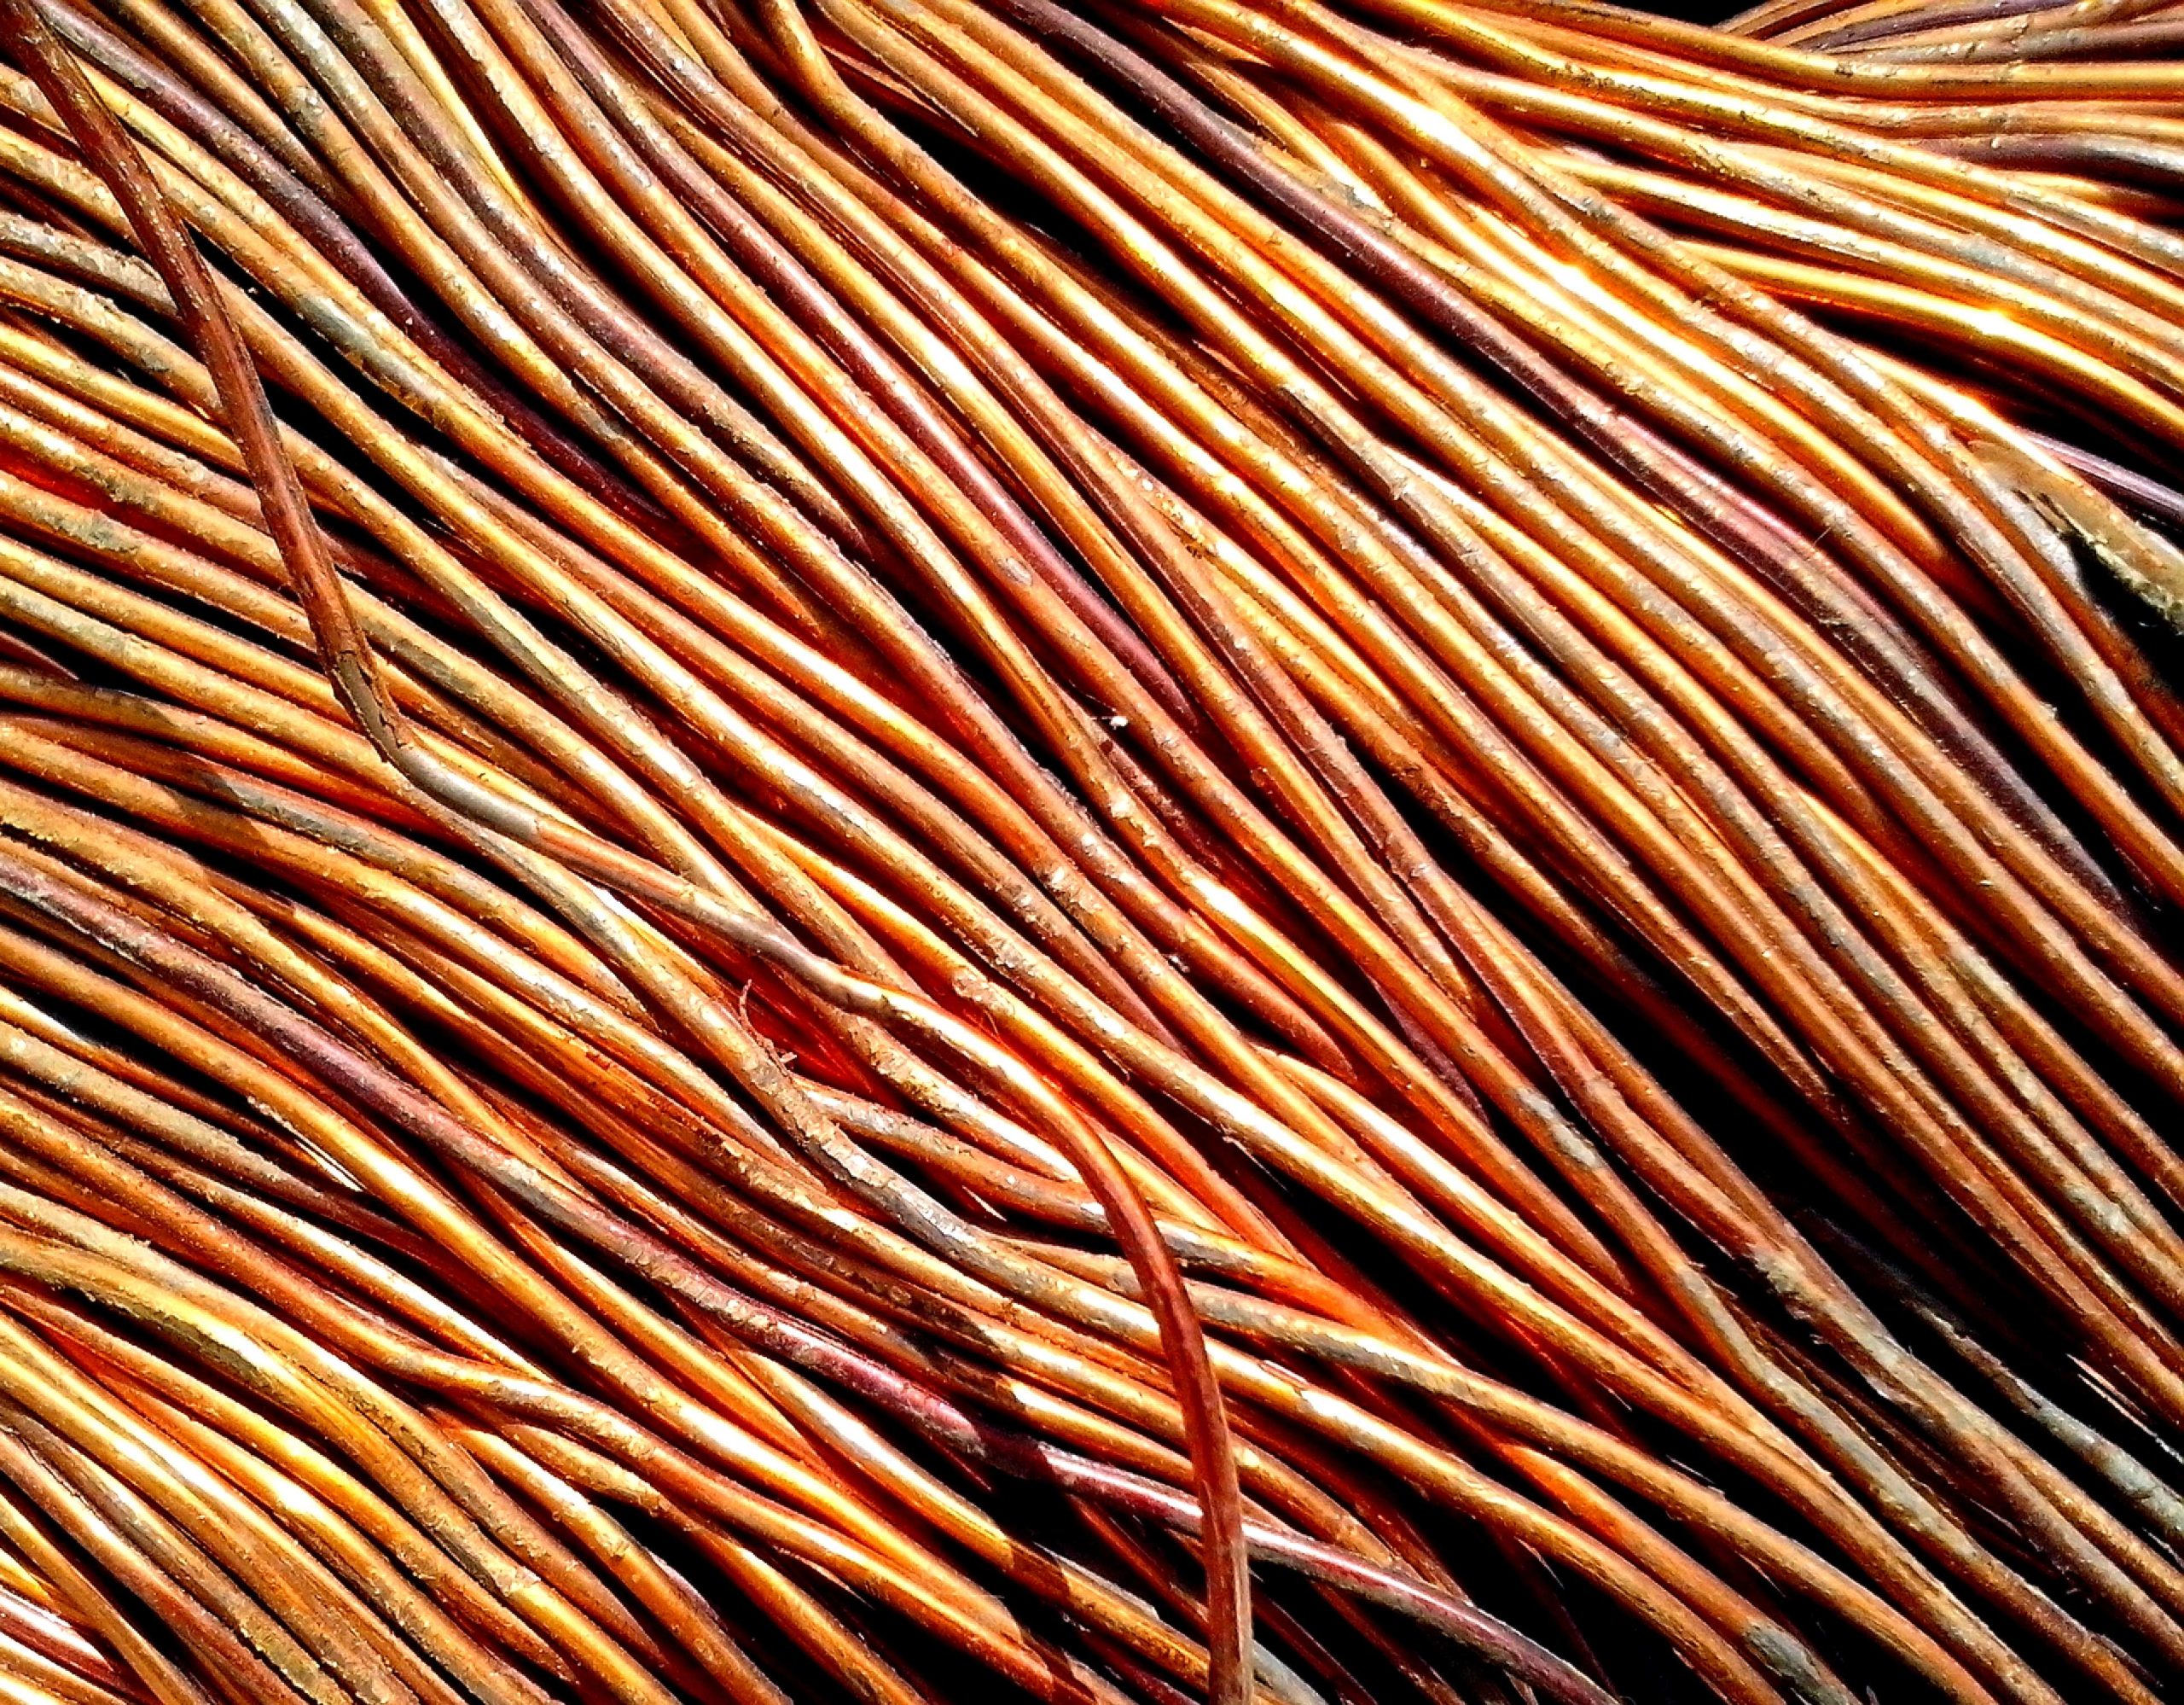 metals trading - copper